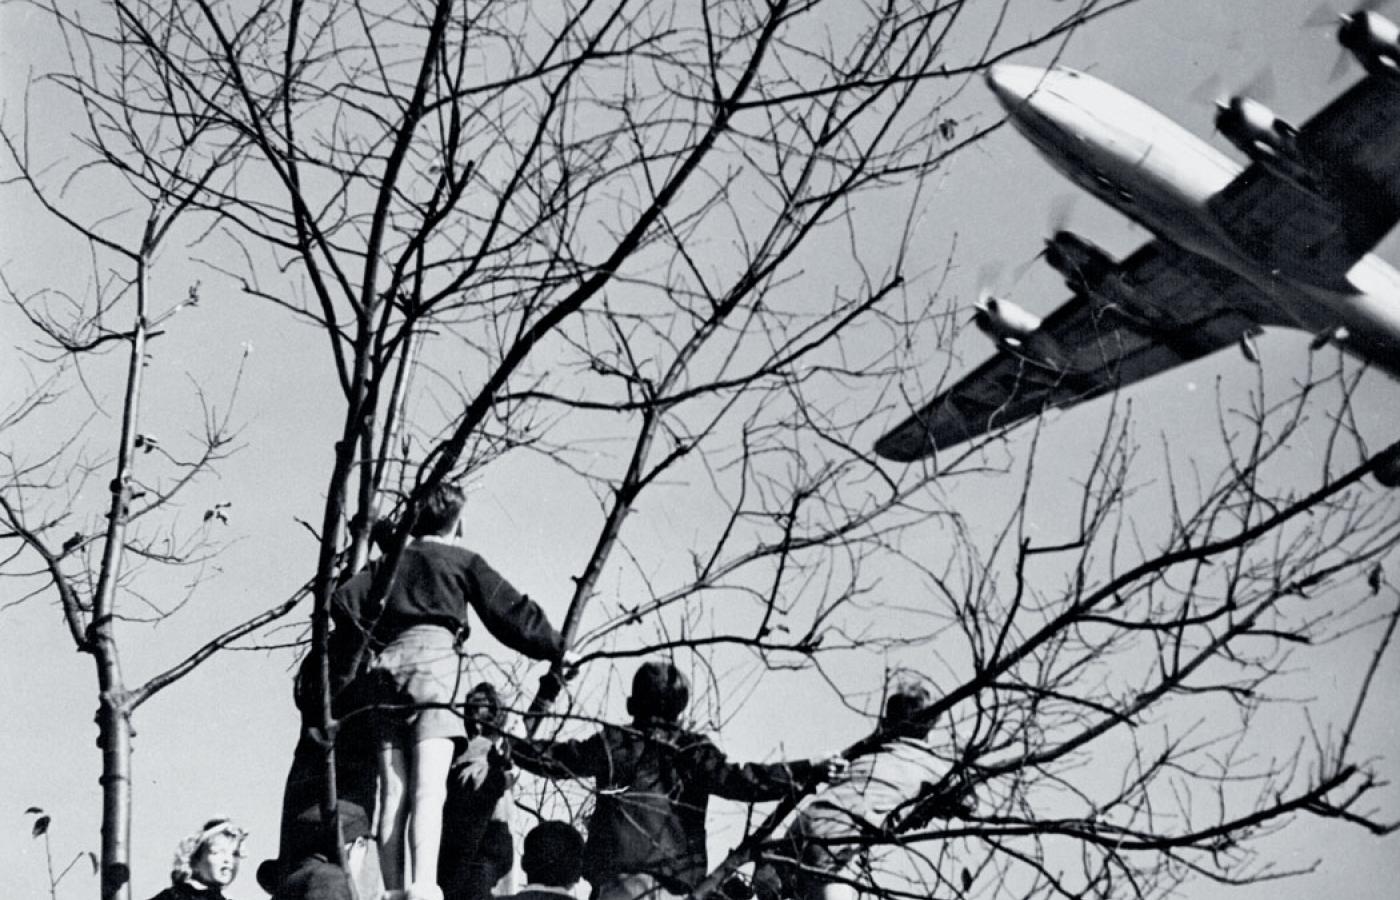 Młodzi berlińczycy oglądają amerykański samolot z pomocą dla zachodnich sektorów miasta podczas zarządzanej przez Stalina blokady Berlina, okolice Bramy Brandenburskiej, czerwiec 1948 r.